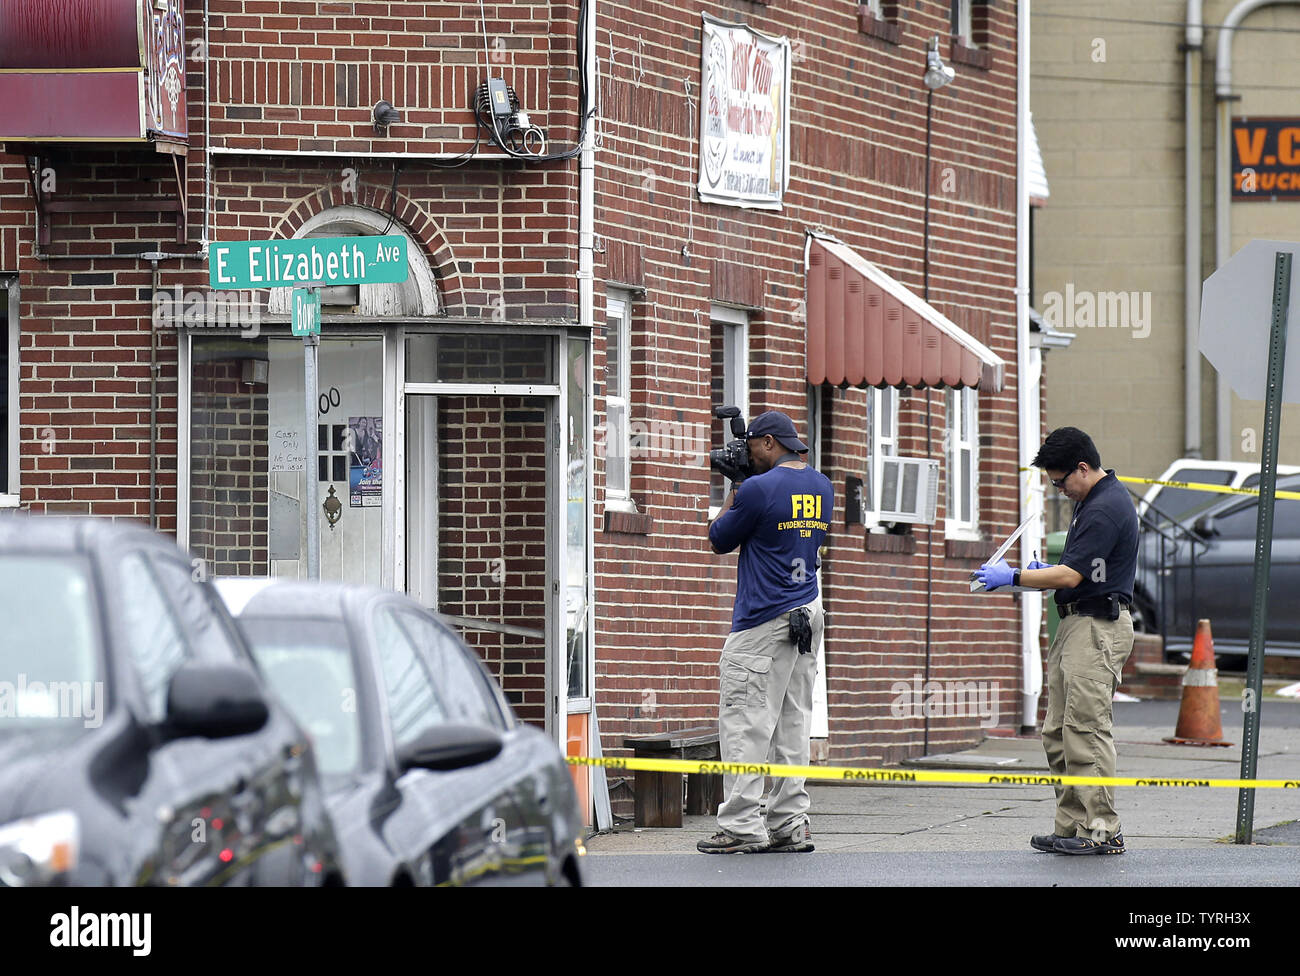 Un agente FBI prende le foto nelle vicinanze dove Ahmad Khan Rahami è stato fermato dalla polizia il 19 settembre 2016 in Linden, New Jersey. Due giorni prima, l'esplosione di una bomba è andato fuori sulla West 23rd Street in Manhattan intorno a 8:30 p.m. il sabato, ferendo 29 persone su West 23rd Street a Manhattan. L'uomo crede di essere responsabile per l'esplosione di Manhattan del sabato notte e un precedente bombardamento nel New Jersey, Ahmad Khan Rahami, è stato preso in custodia il lunedì dopo che egli è stato ferito in uno scontro a fuoco con la polizia. Foto di Giovanni Angelillo/UPI Foto Stock